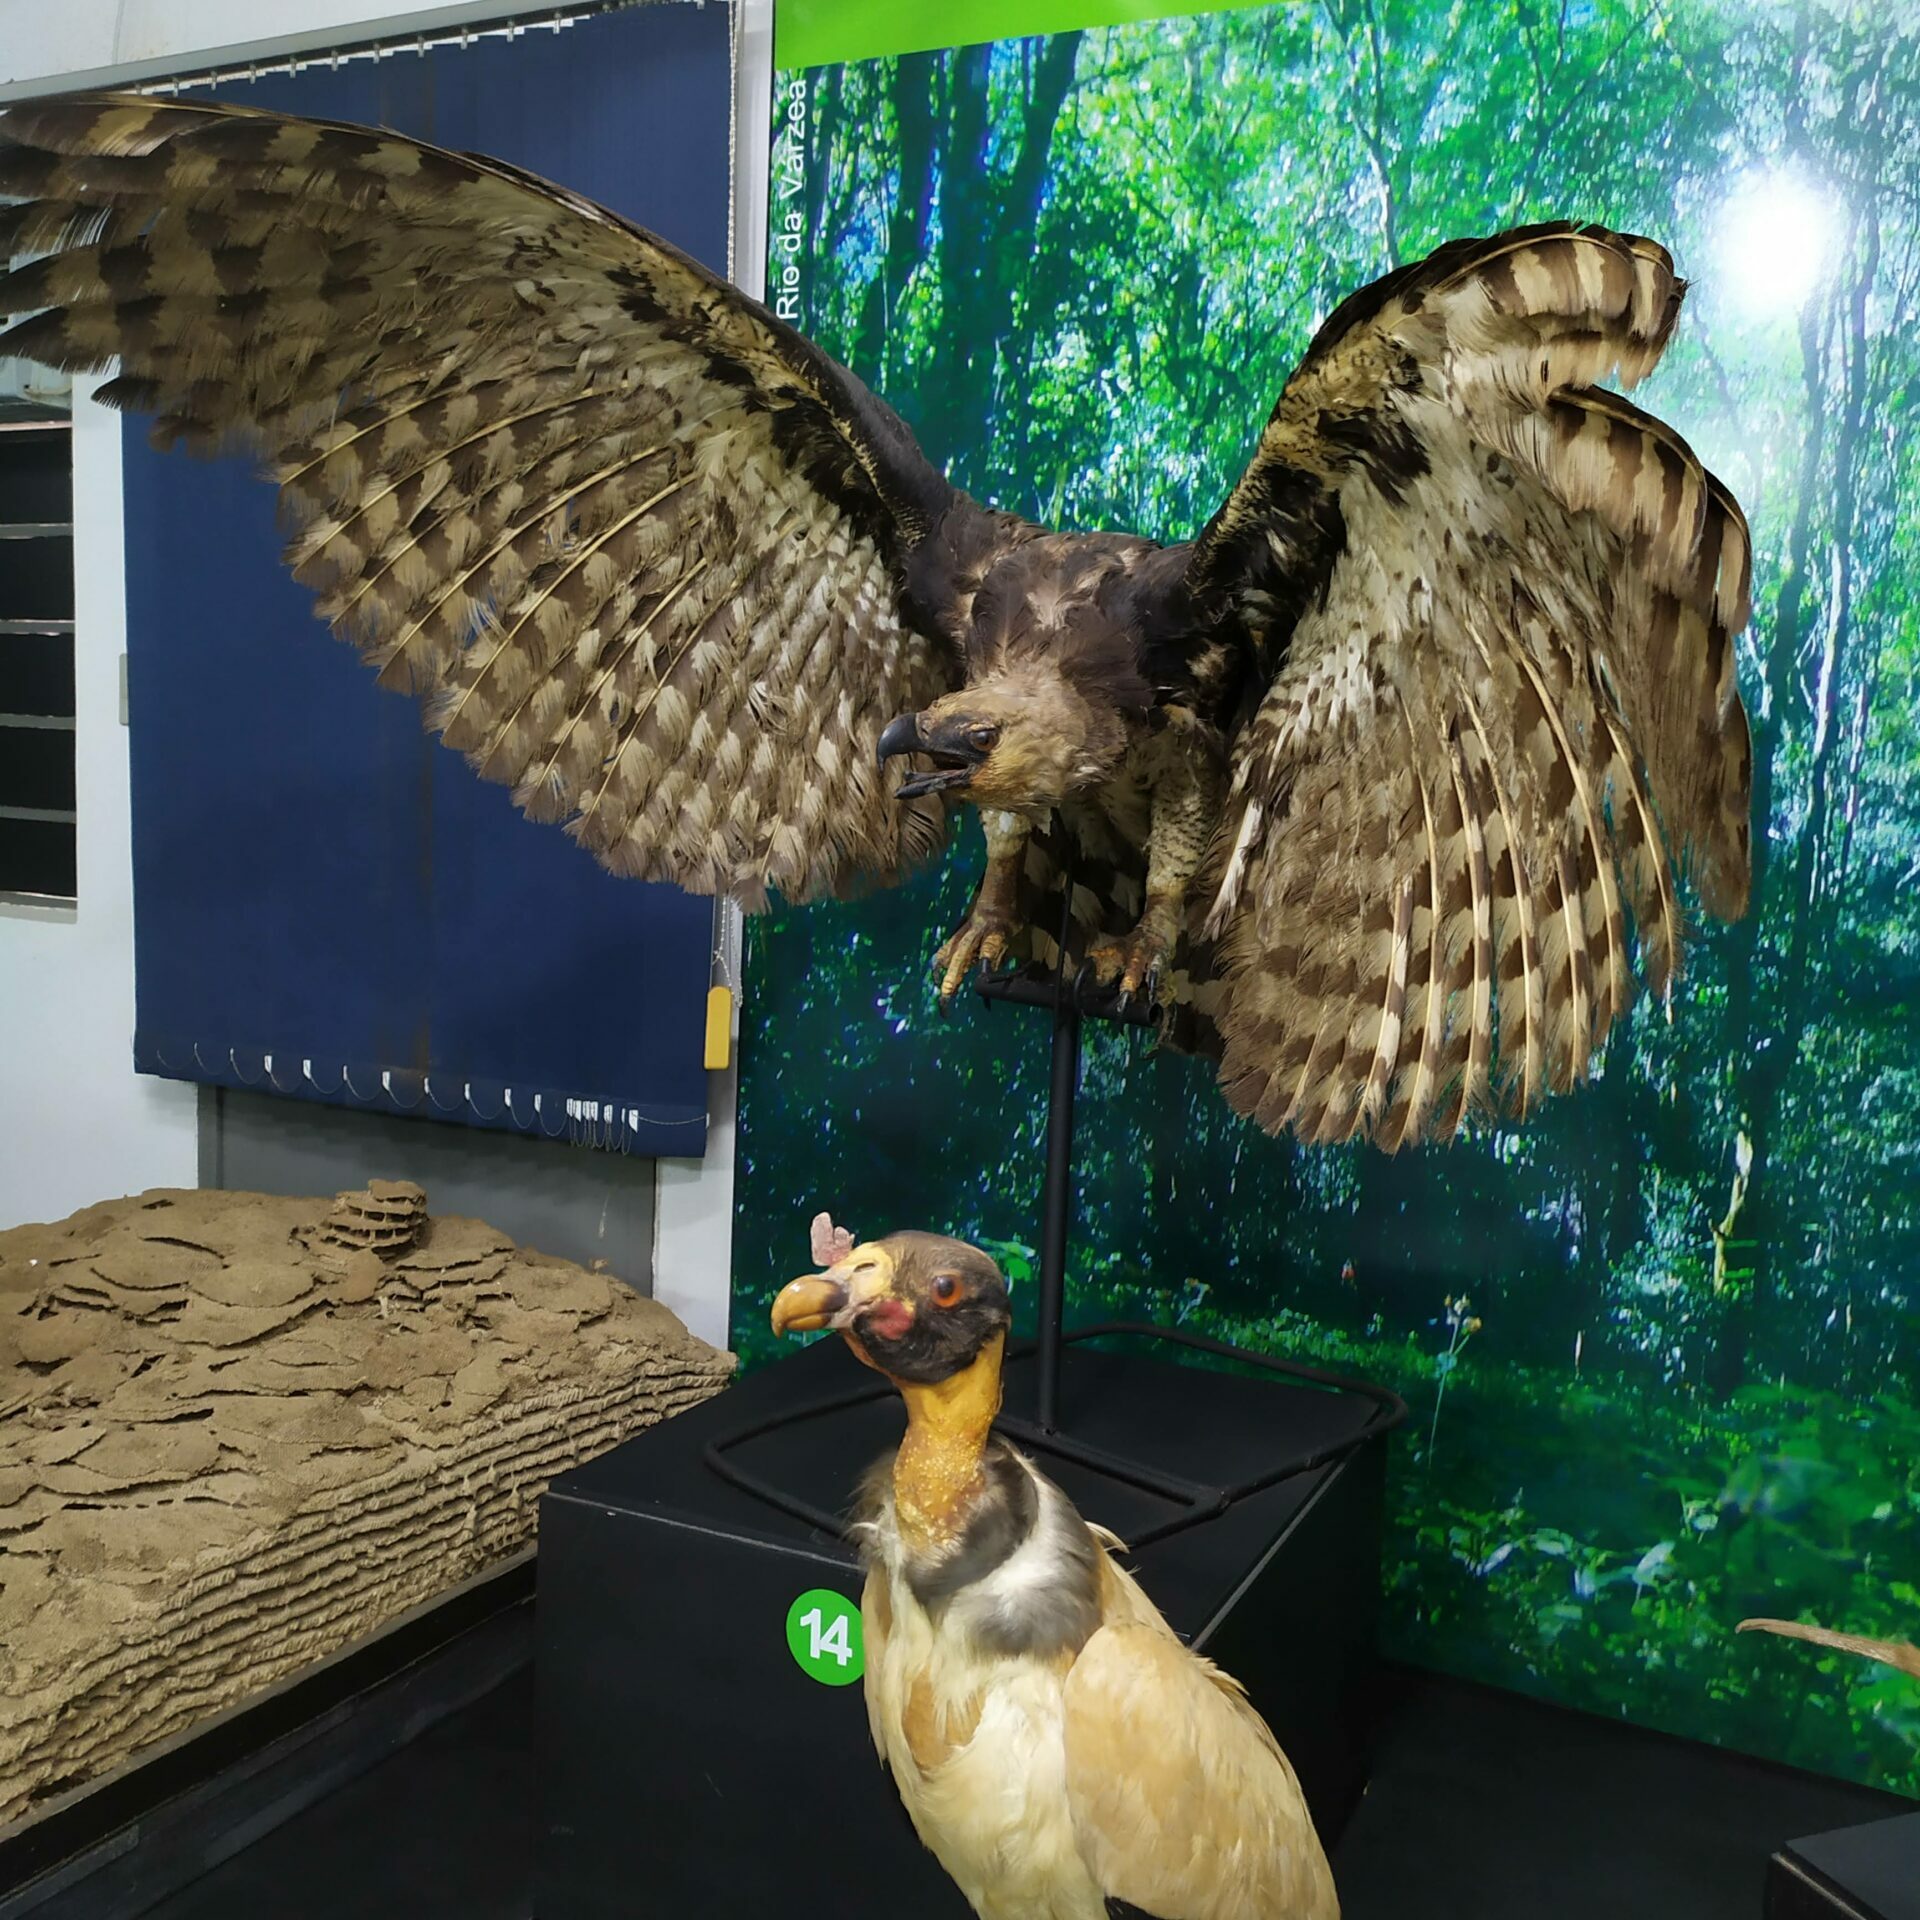 Exposição de longa duração denominada "Carazinho e seus ecossistemas", exposta no Museu Olívio Otto de Carazinho/Rs, Brasil.